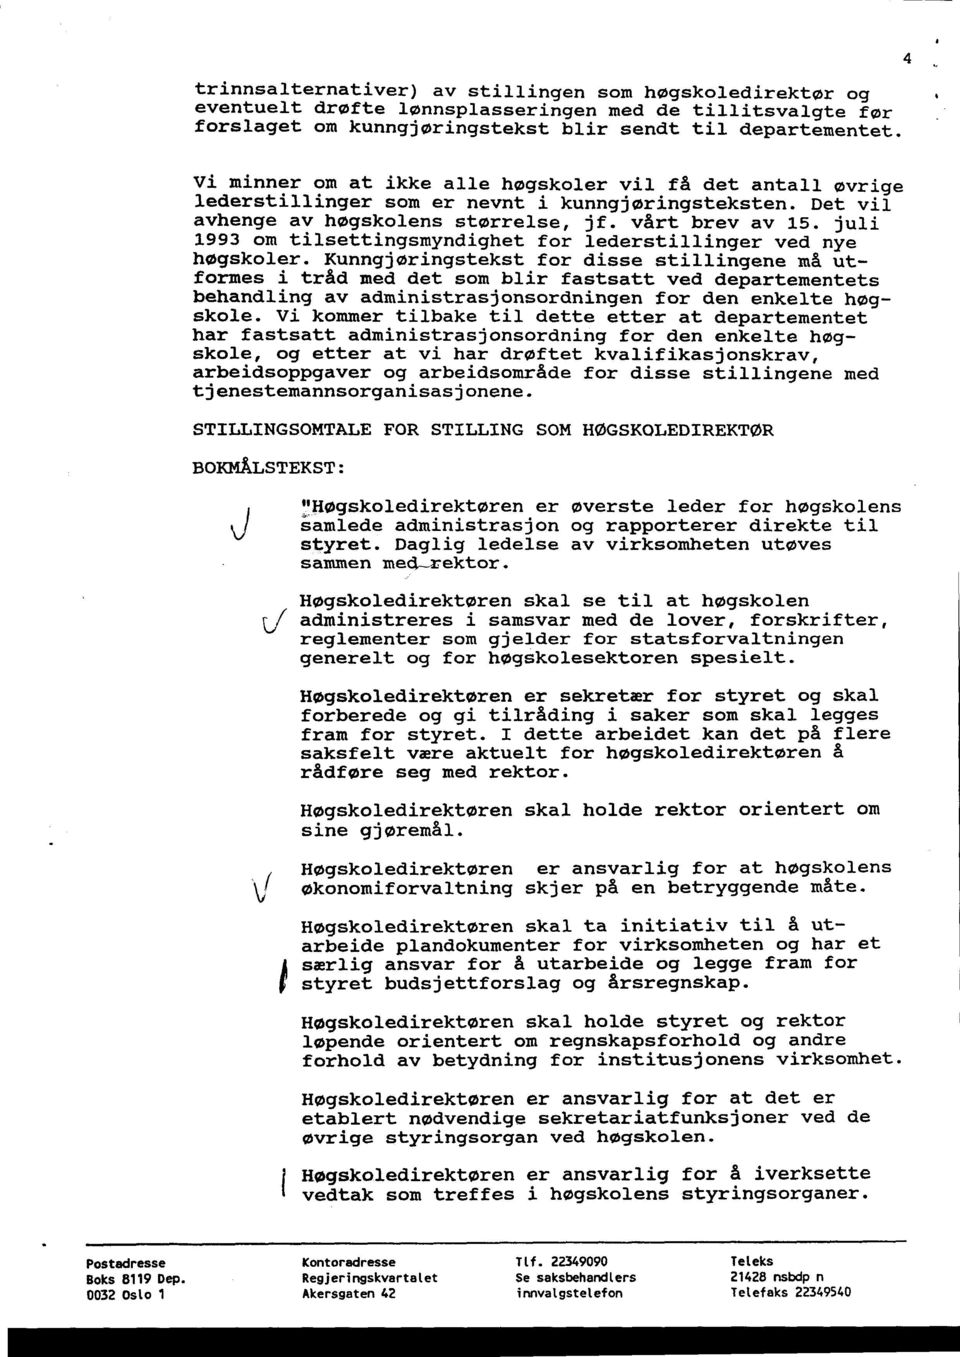 juli 1993 om tilsettingsmyndighet for lederstillinger ved nye høgskoler.